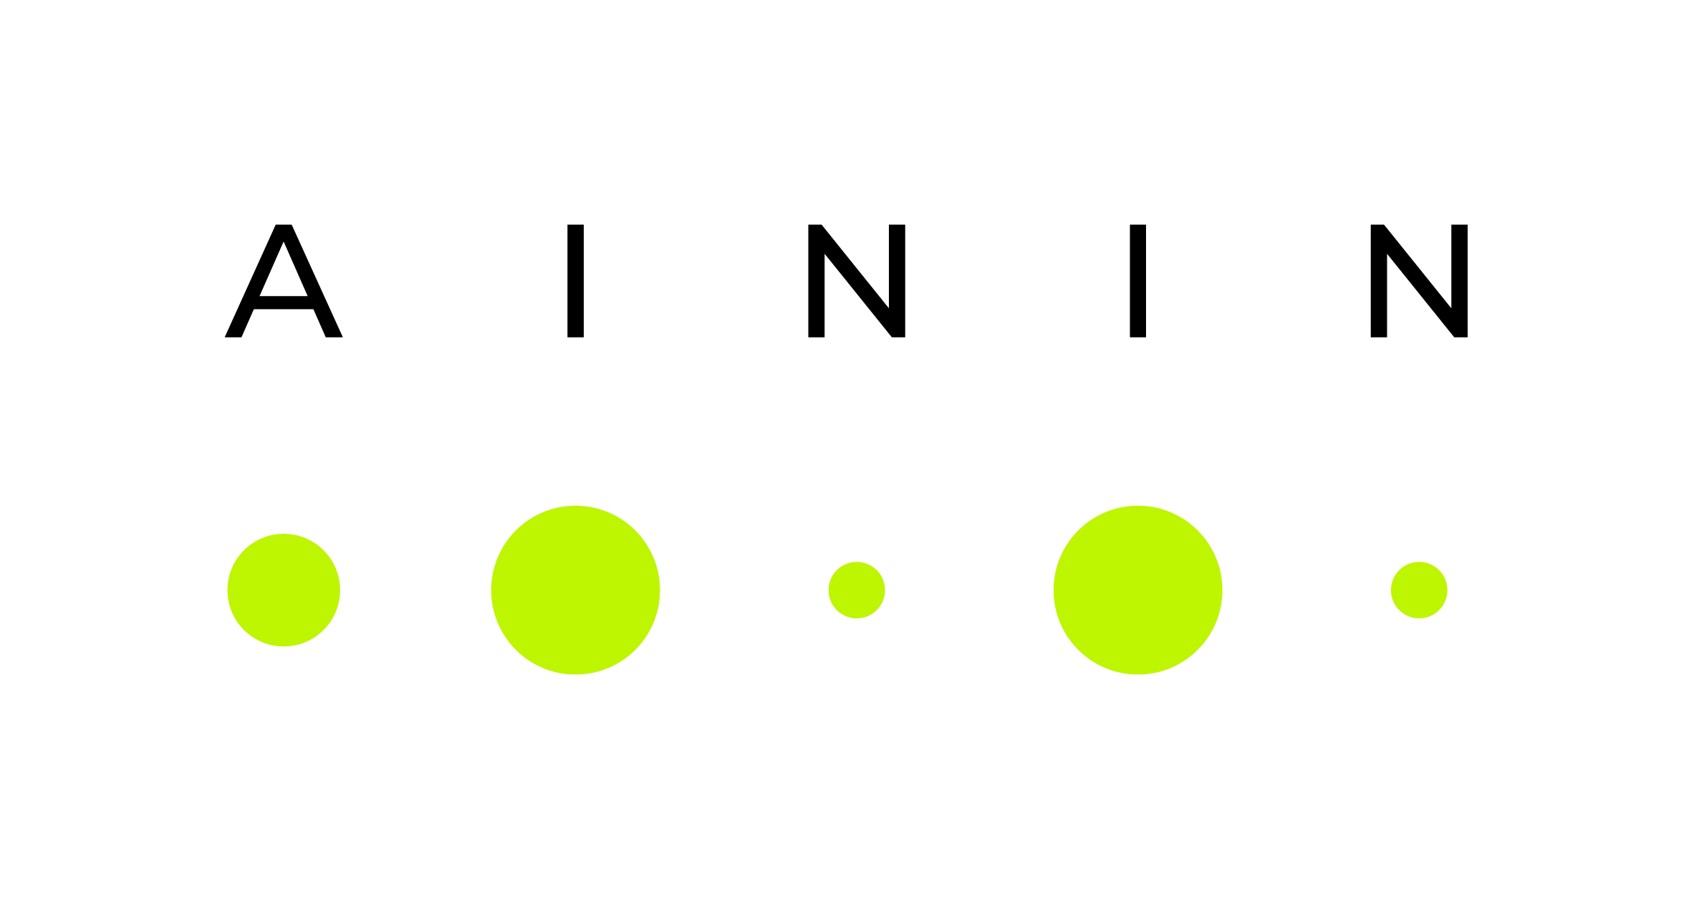 Darstellung des AININ-Logos mit dem Buchstaben AININ und neongrünen Punkten darunter